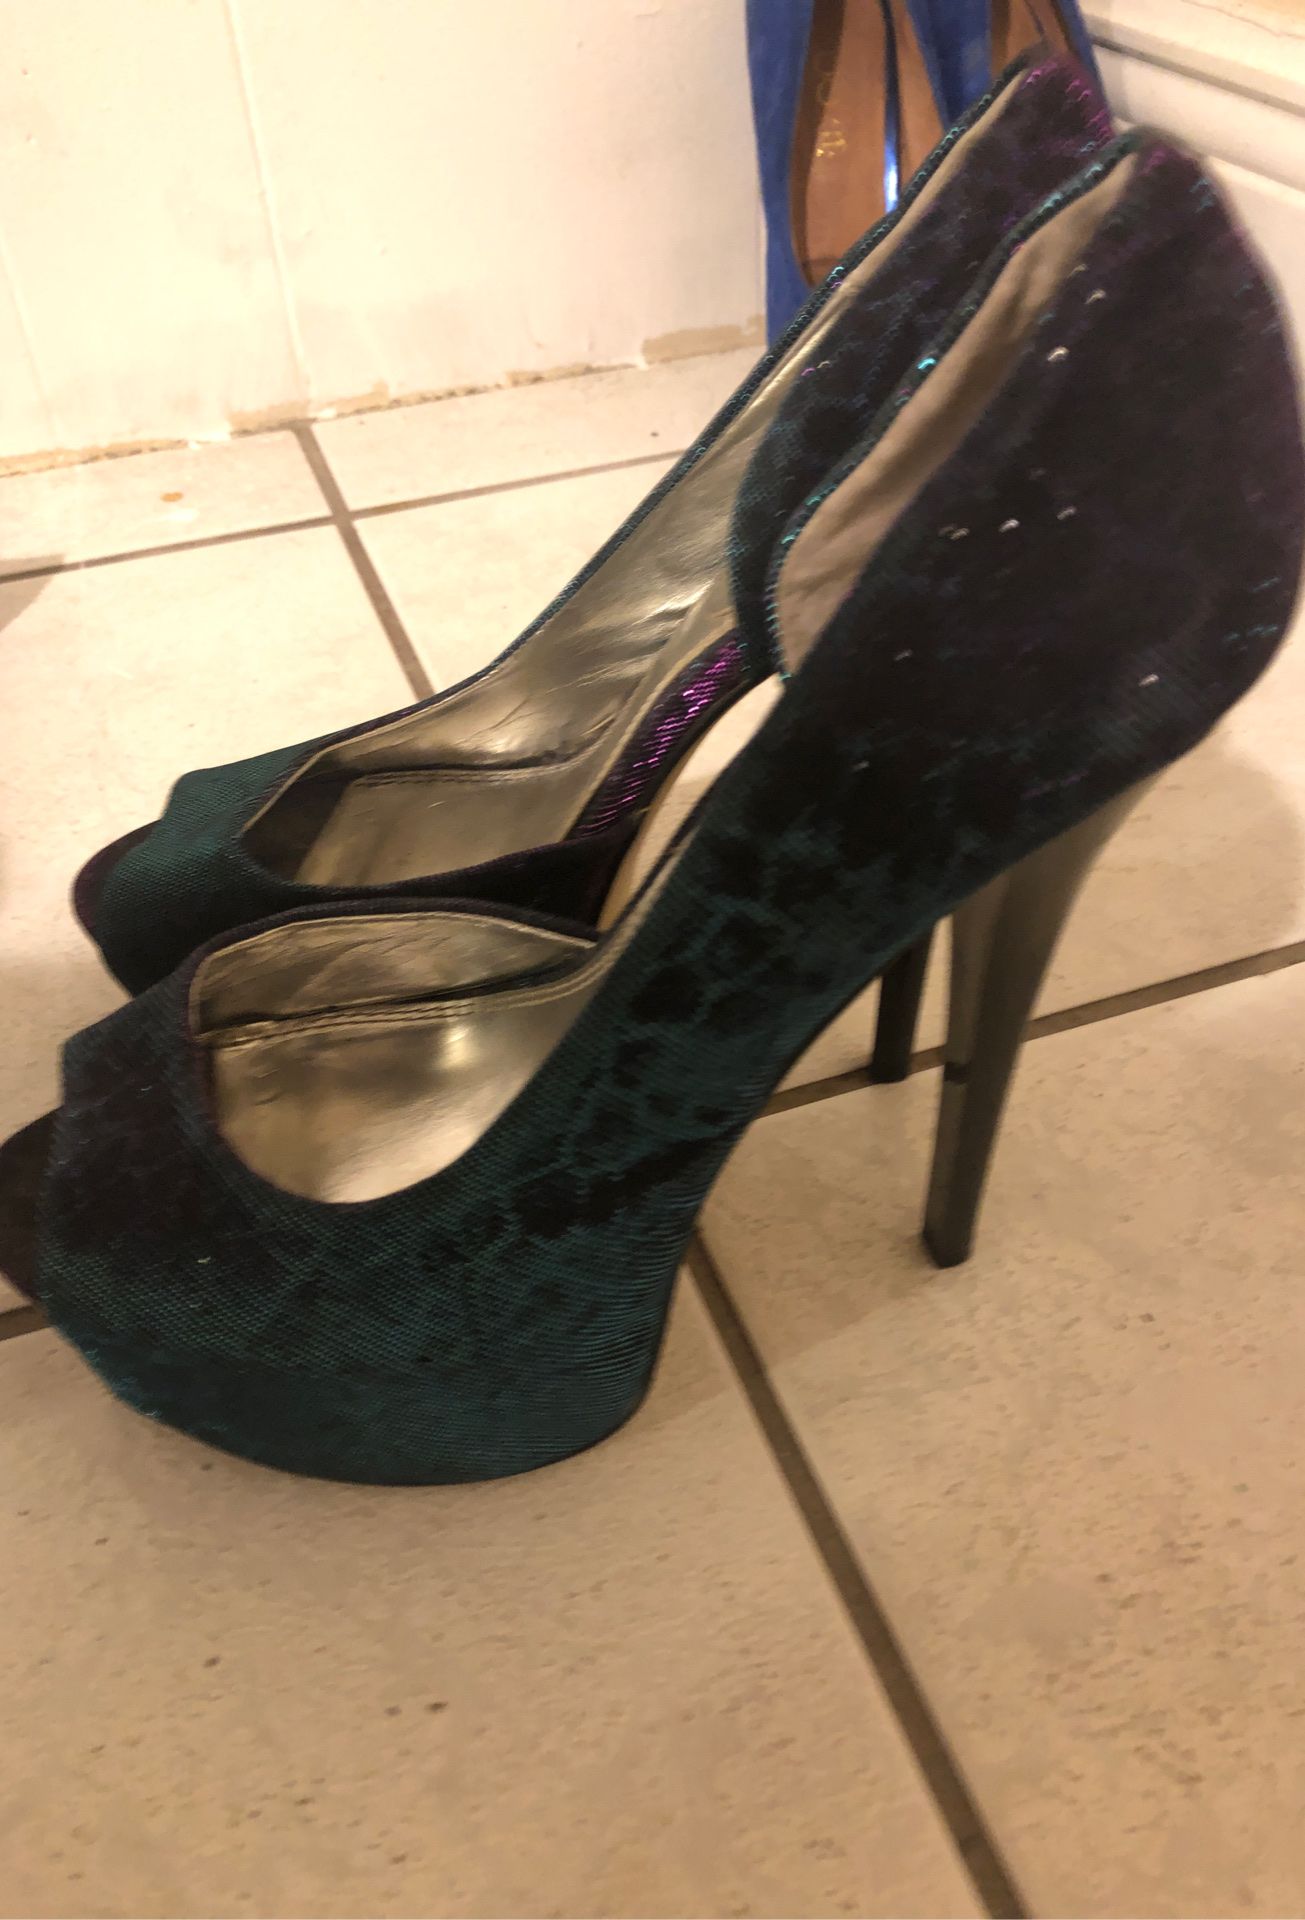 Size 8 women’s heels $20 each